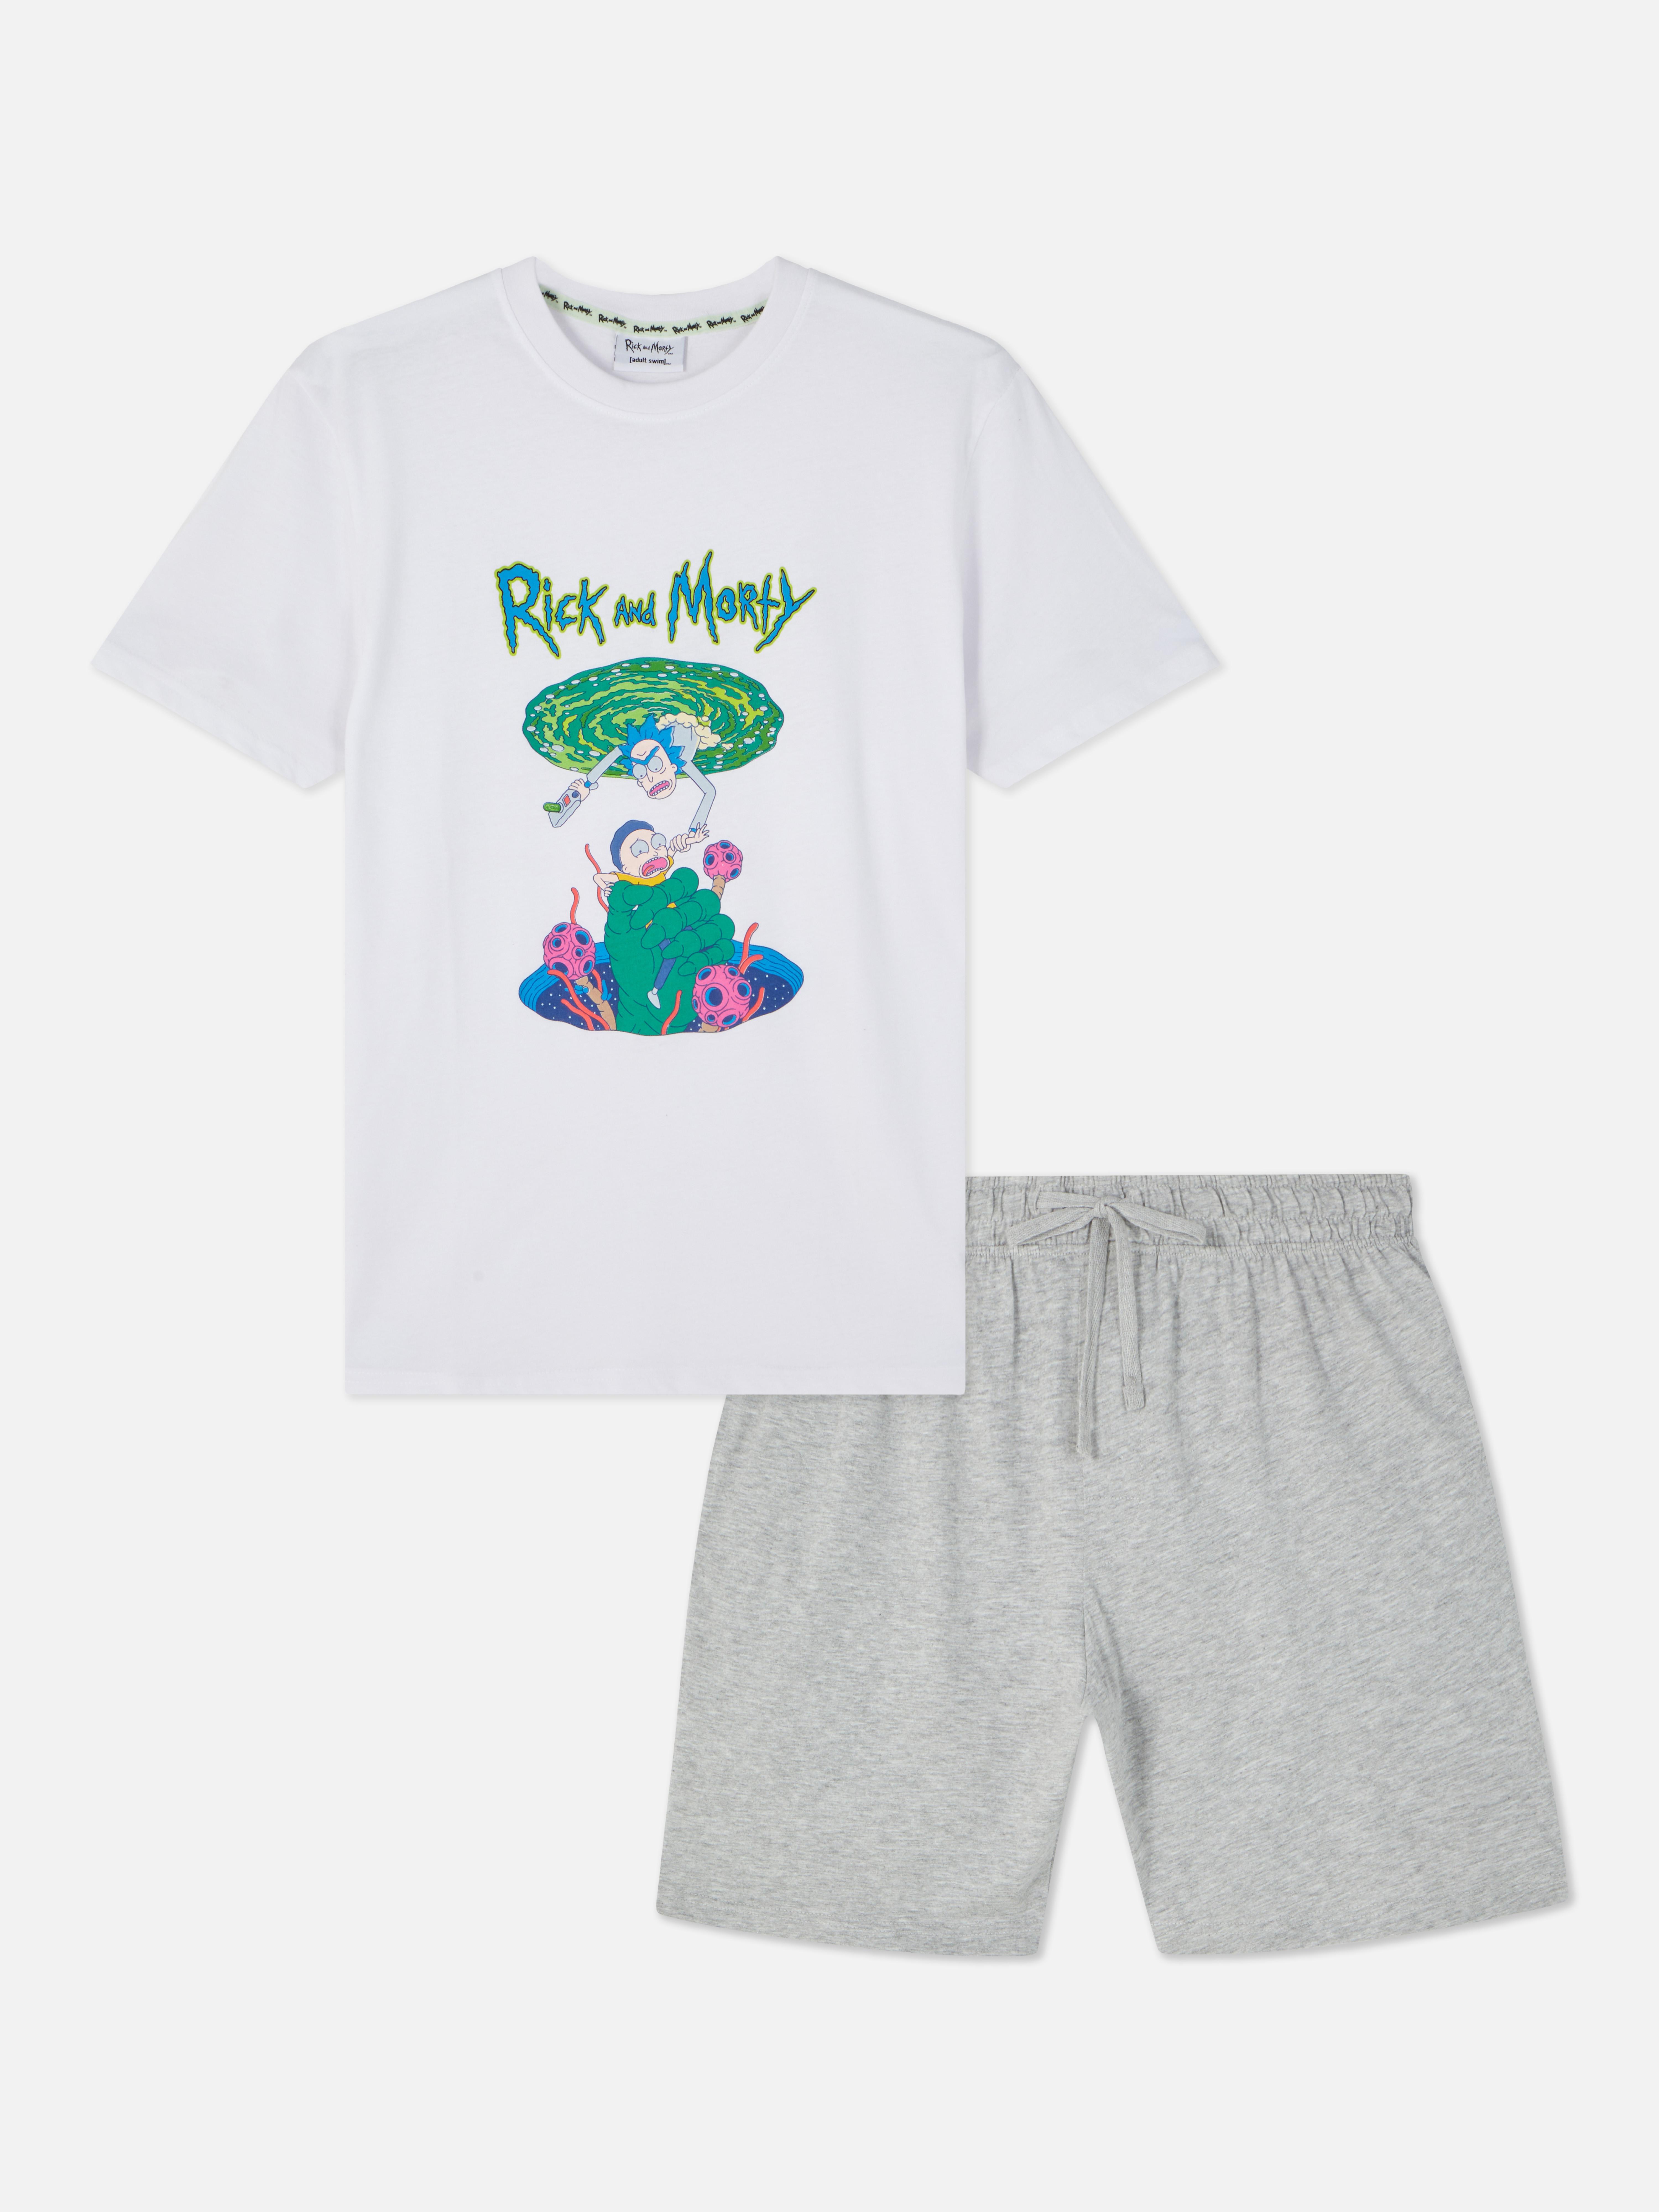 Rick and Morty Pyjamas